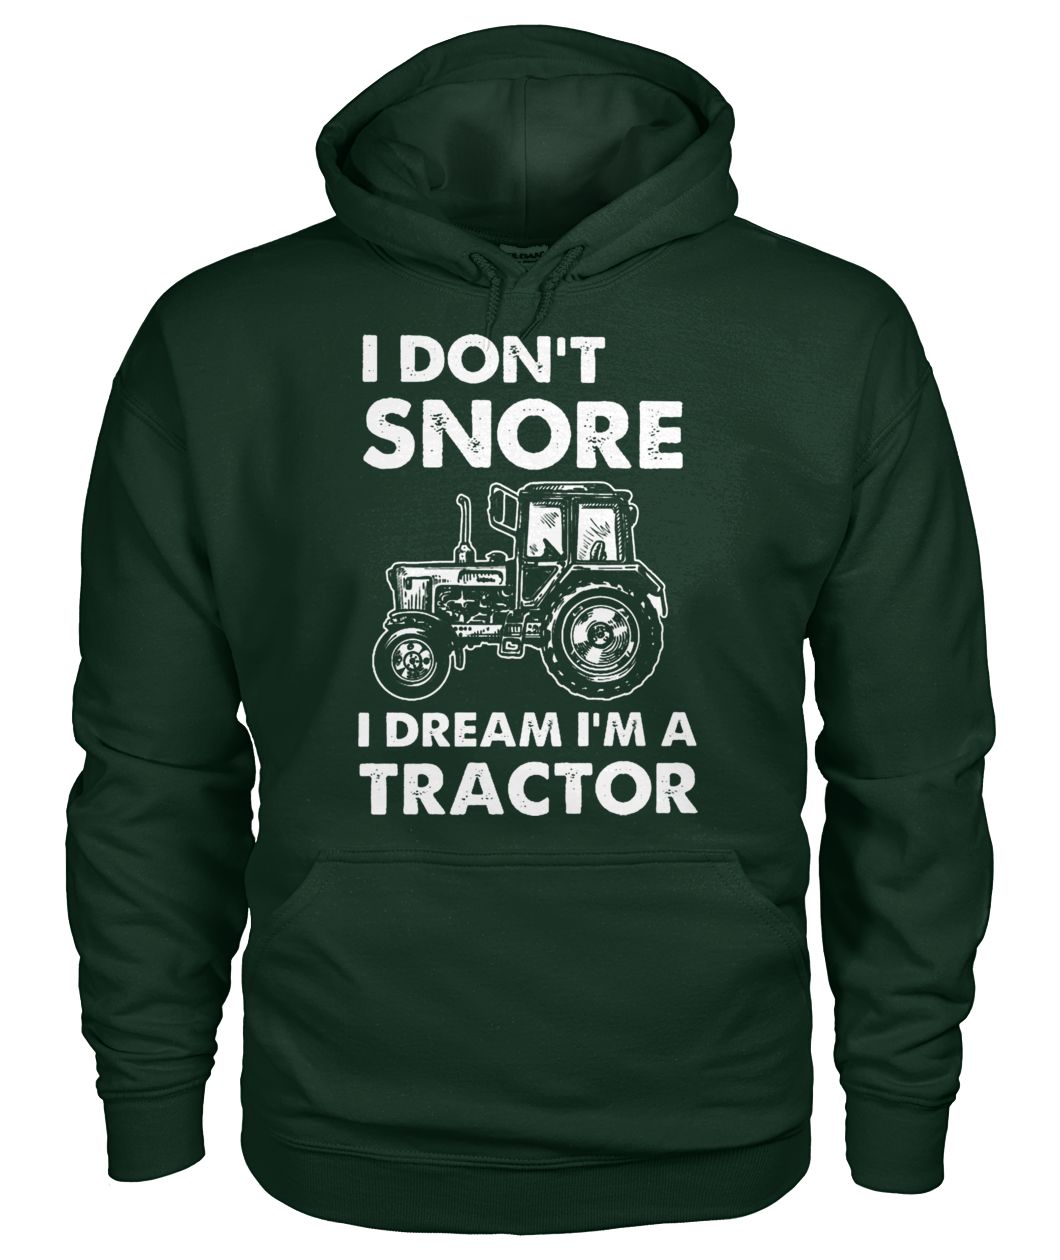 I don't snore I dream I'm a tractor gildan hoodie